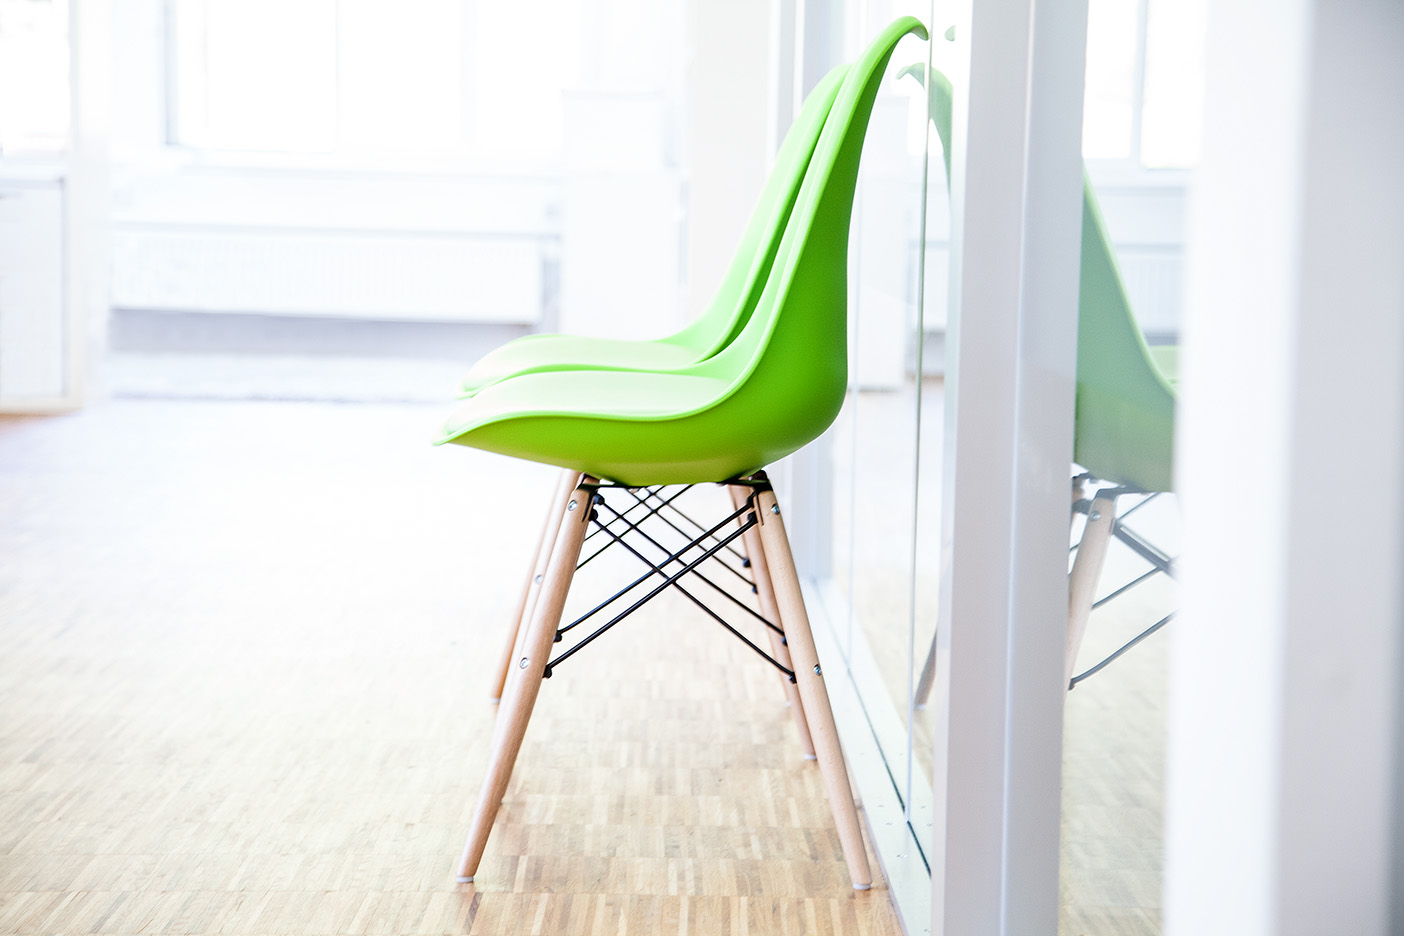 Ein grüner Stuhl an einer Glaswand